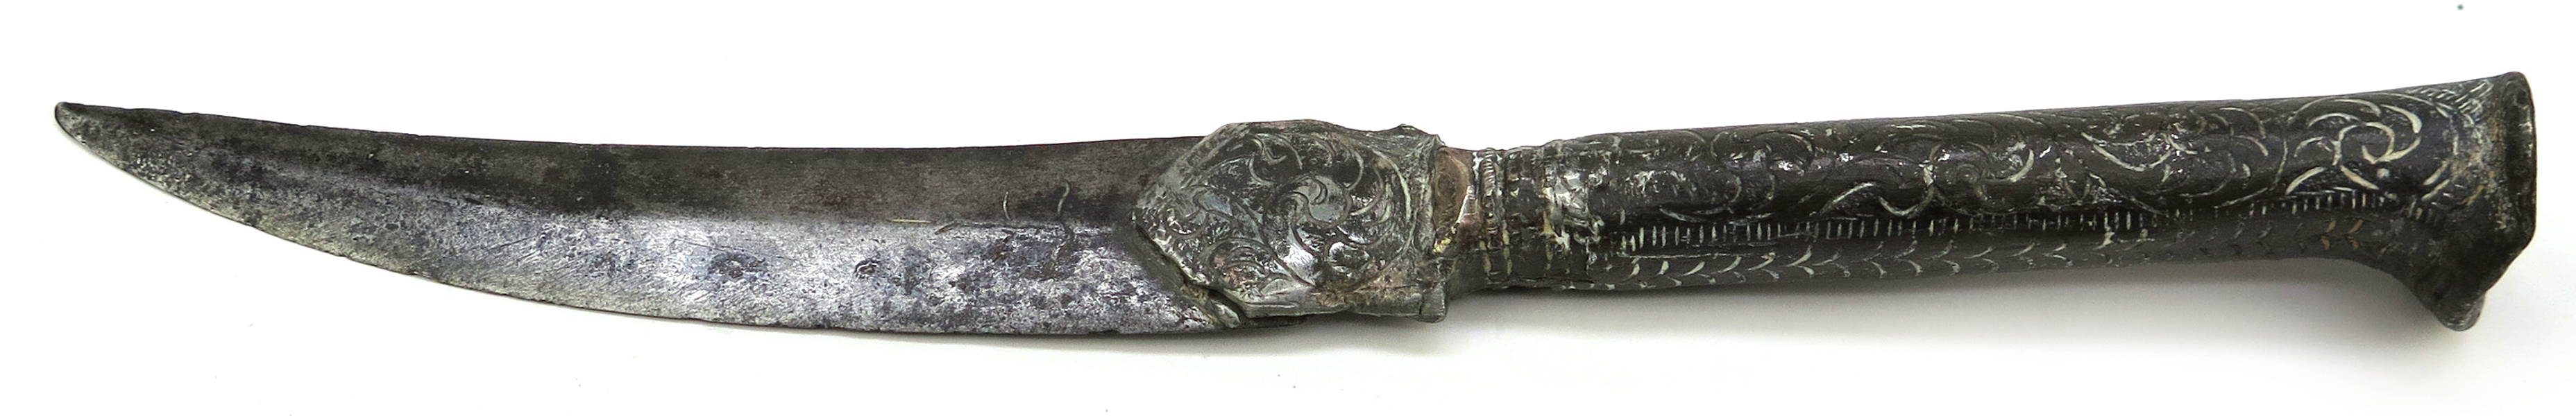 Kniv, stål med silverdekor, så kallad Bichaq, Balkan, 17-1800-tal, klinga med svårtydd inskription, l 23 cm, skador_27310a_8db3ce2e9ea3c44_lg.jpeg